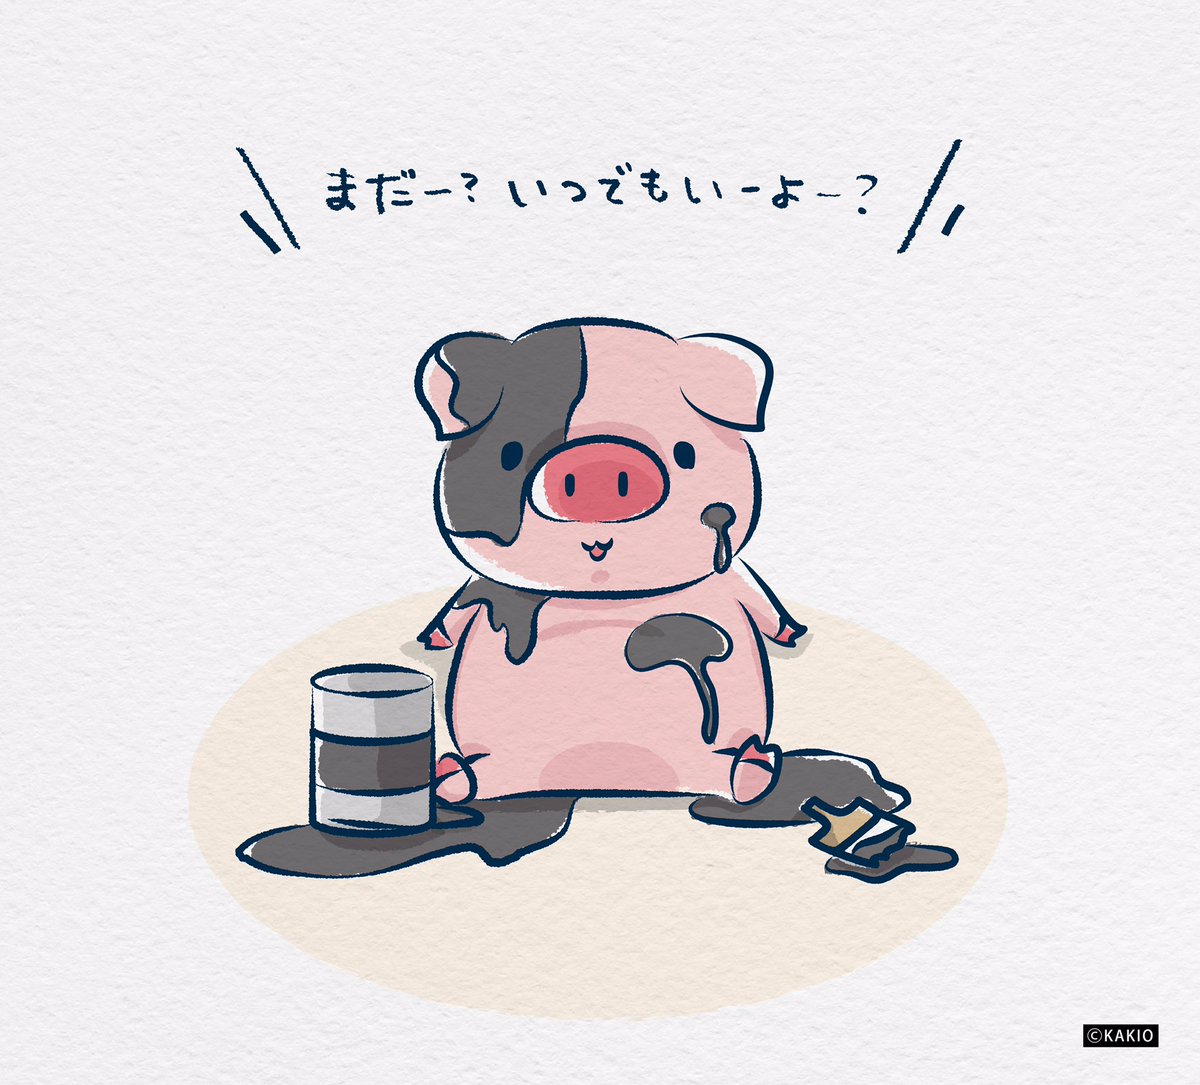 かきお Suzuriで販売中 今年も豚年を待ち続けてる図 私の中では年中豚年フィーバーです イラスト いらすと好きな人と繋がりたい かわいいイラスト ゆるいイラスト 絵描き 落書き デザイン 干支 21年 ブタ ミニブタ マイクロブタ